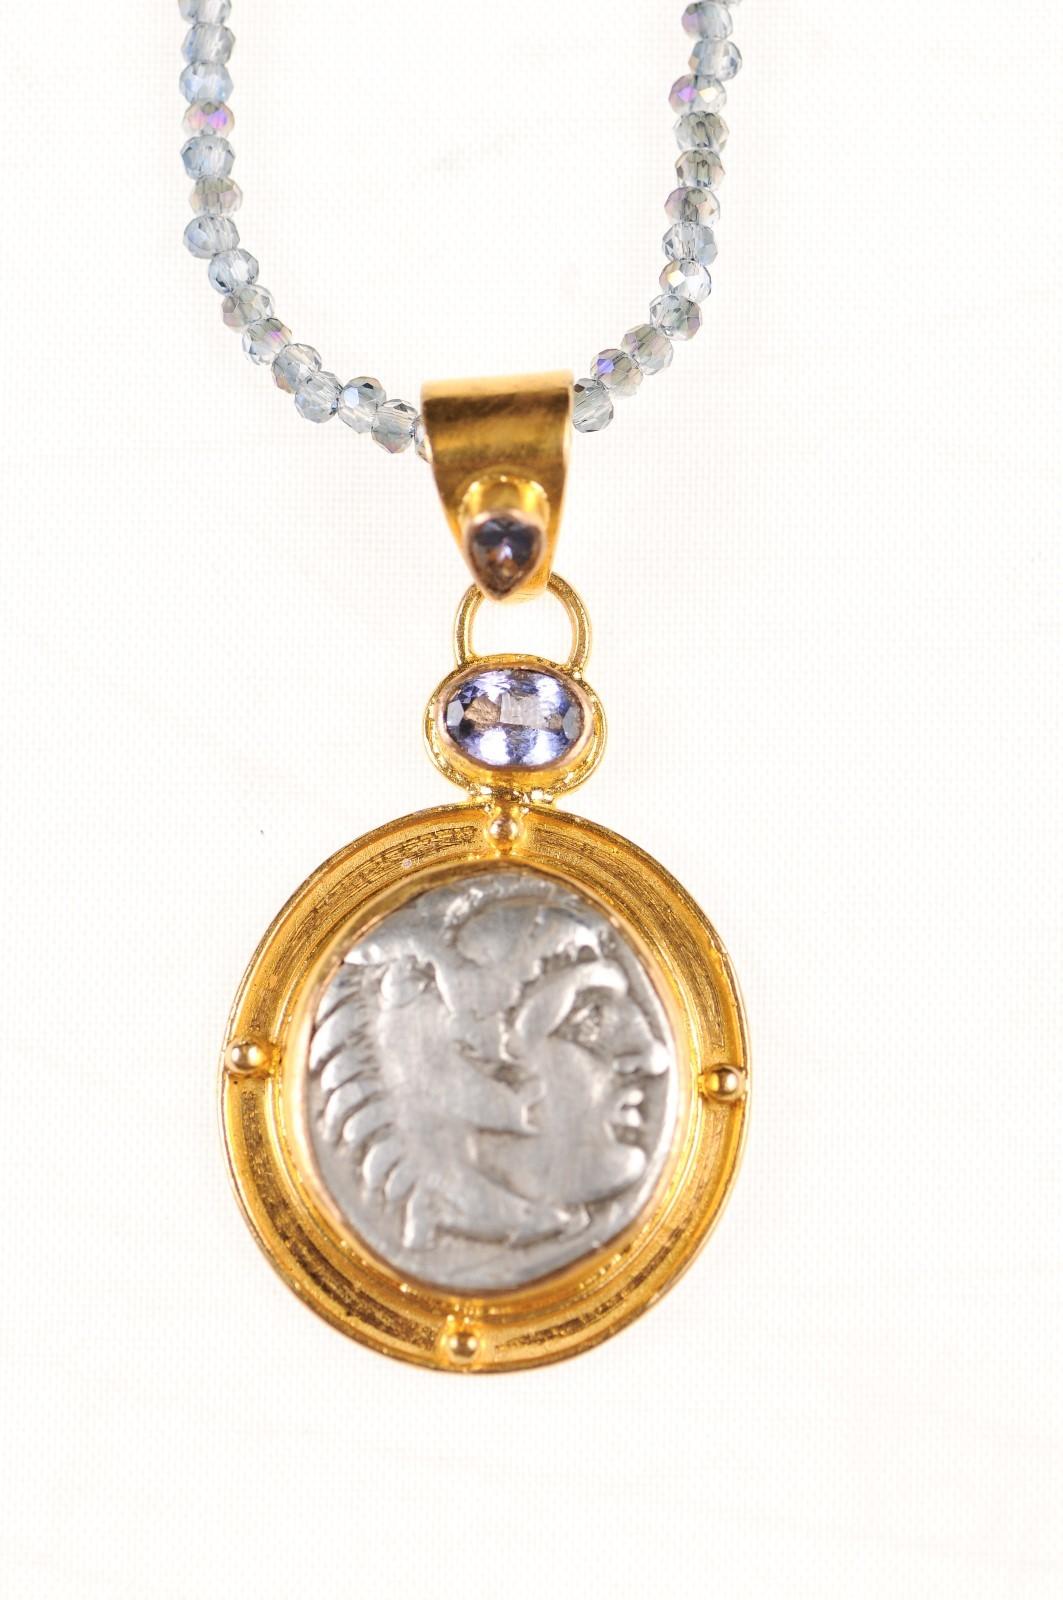 Eine authentische griechische (makedonische) Silberdrachme Alexanders des Großen (ca. 336 - 323 v. Chr.), eingefasst in eine 22-karätige Goldlünette und einen mit Tansanitsteinen verzierten Bügel. Die Vorderseite dieser Münze zeigt Herakles. Auf der